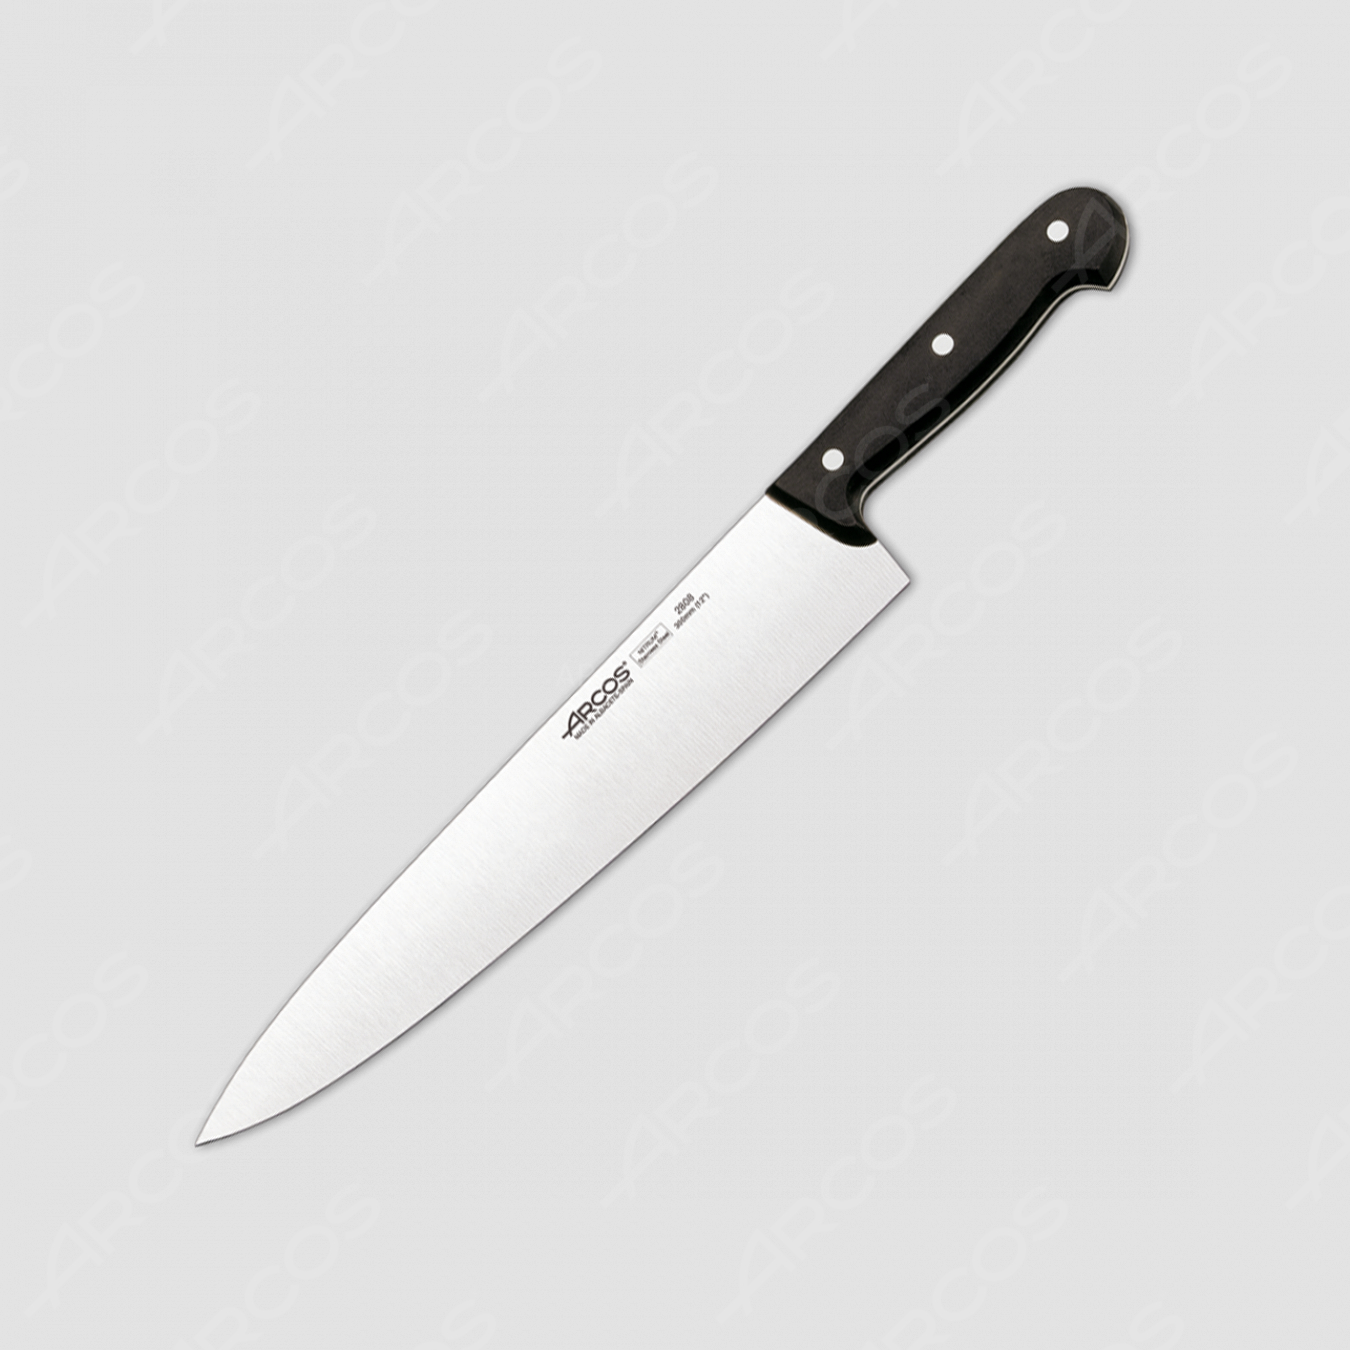 Профессиональный поварской кухонный нож 30 см, серия Universal, ARCOS, Испания